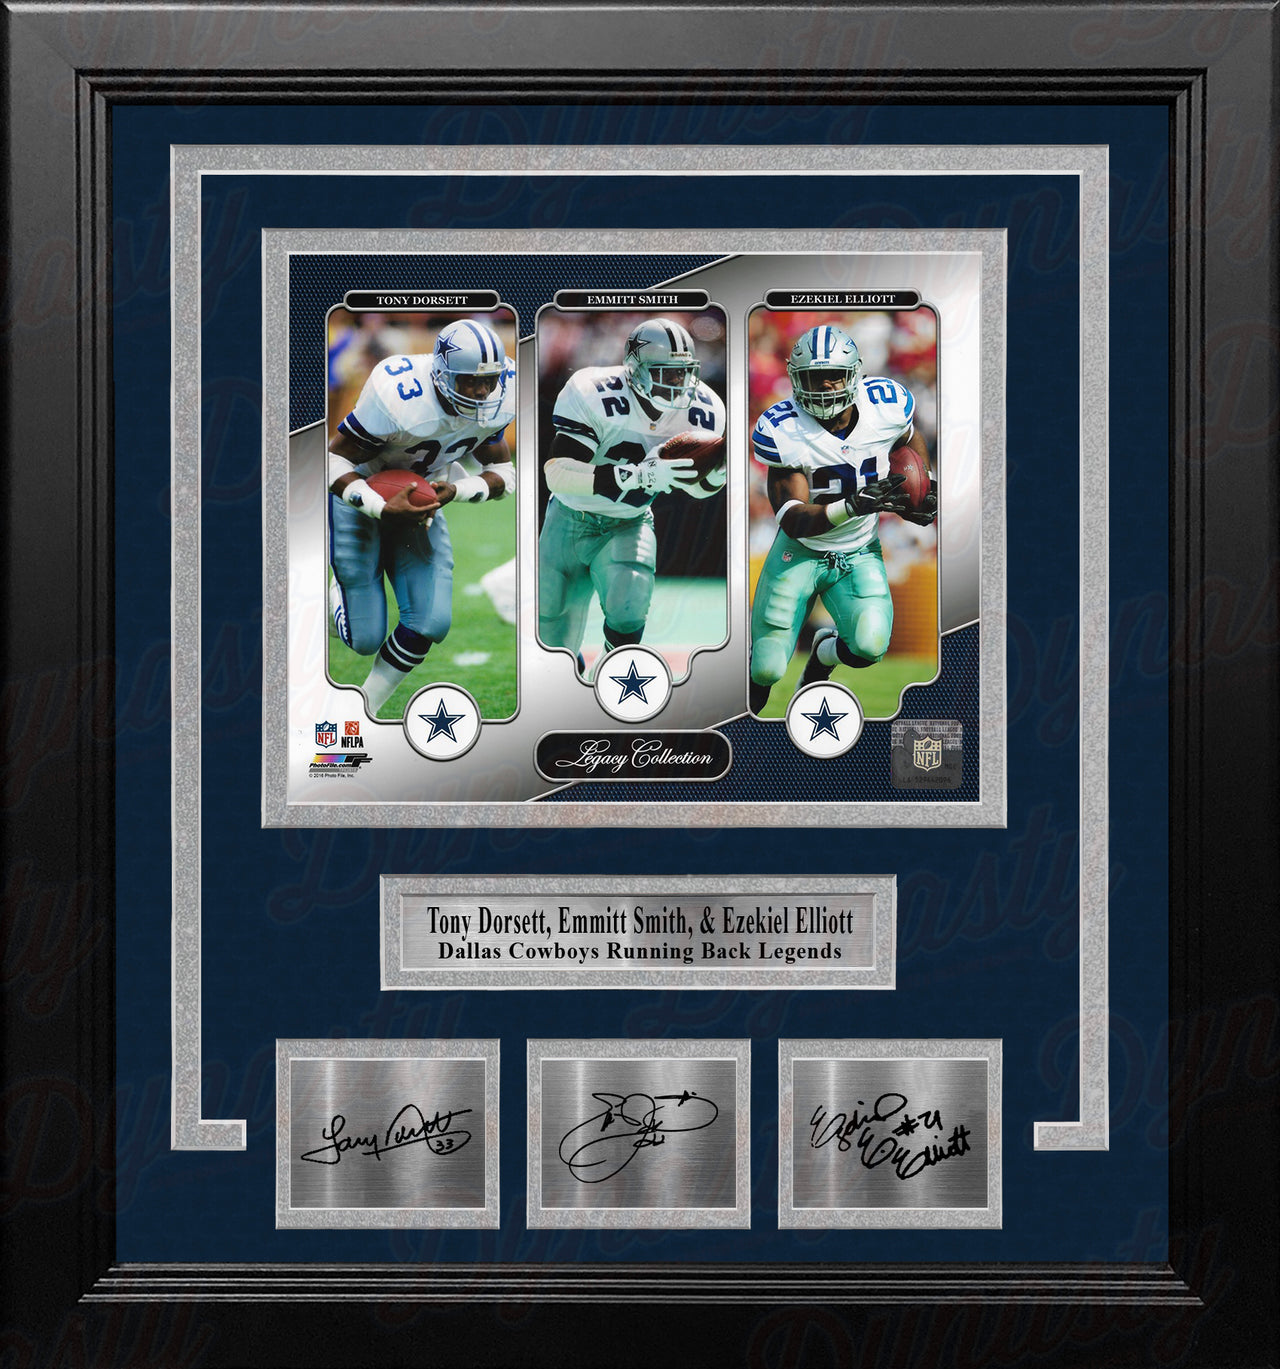 Tony Dorsett Emmitt Smith & Ezekiel Elliott Dallas Cowboys 8x10 Framed Photo w/ Engraved Autographs